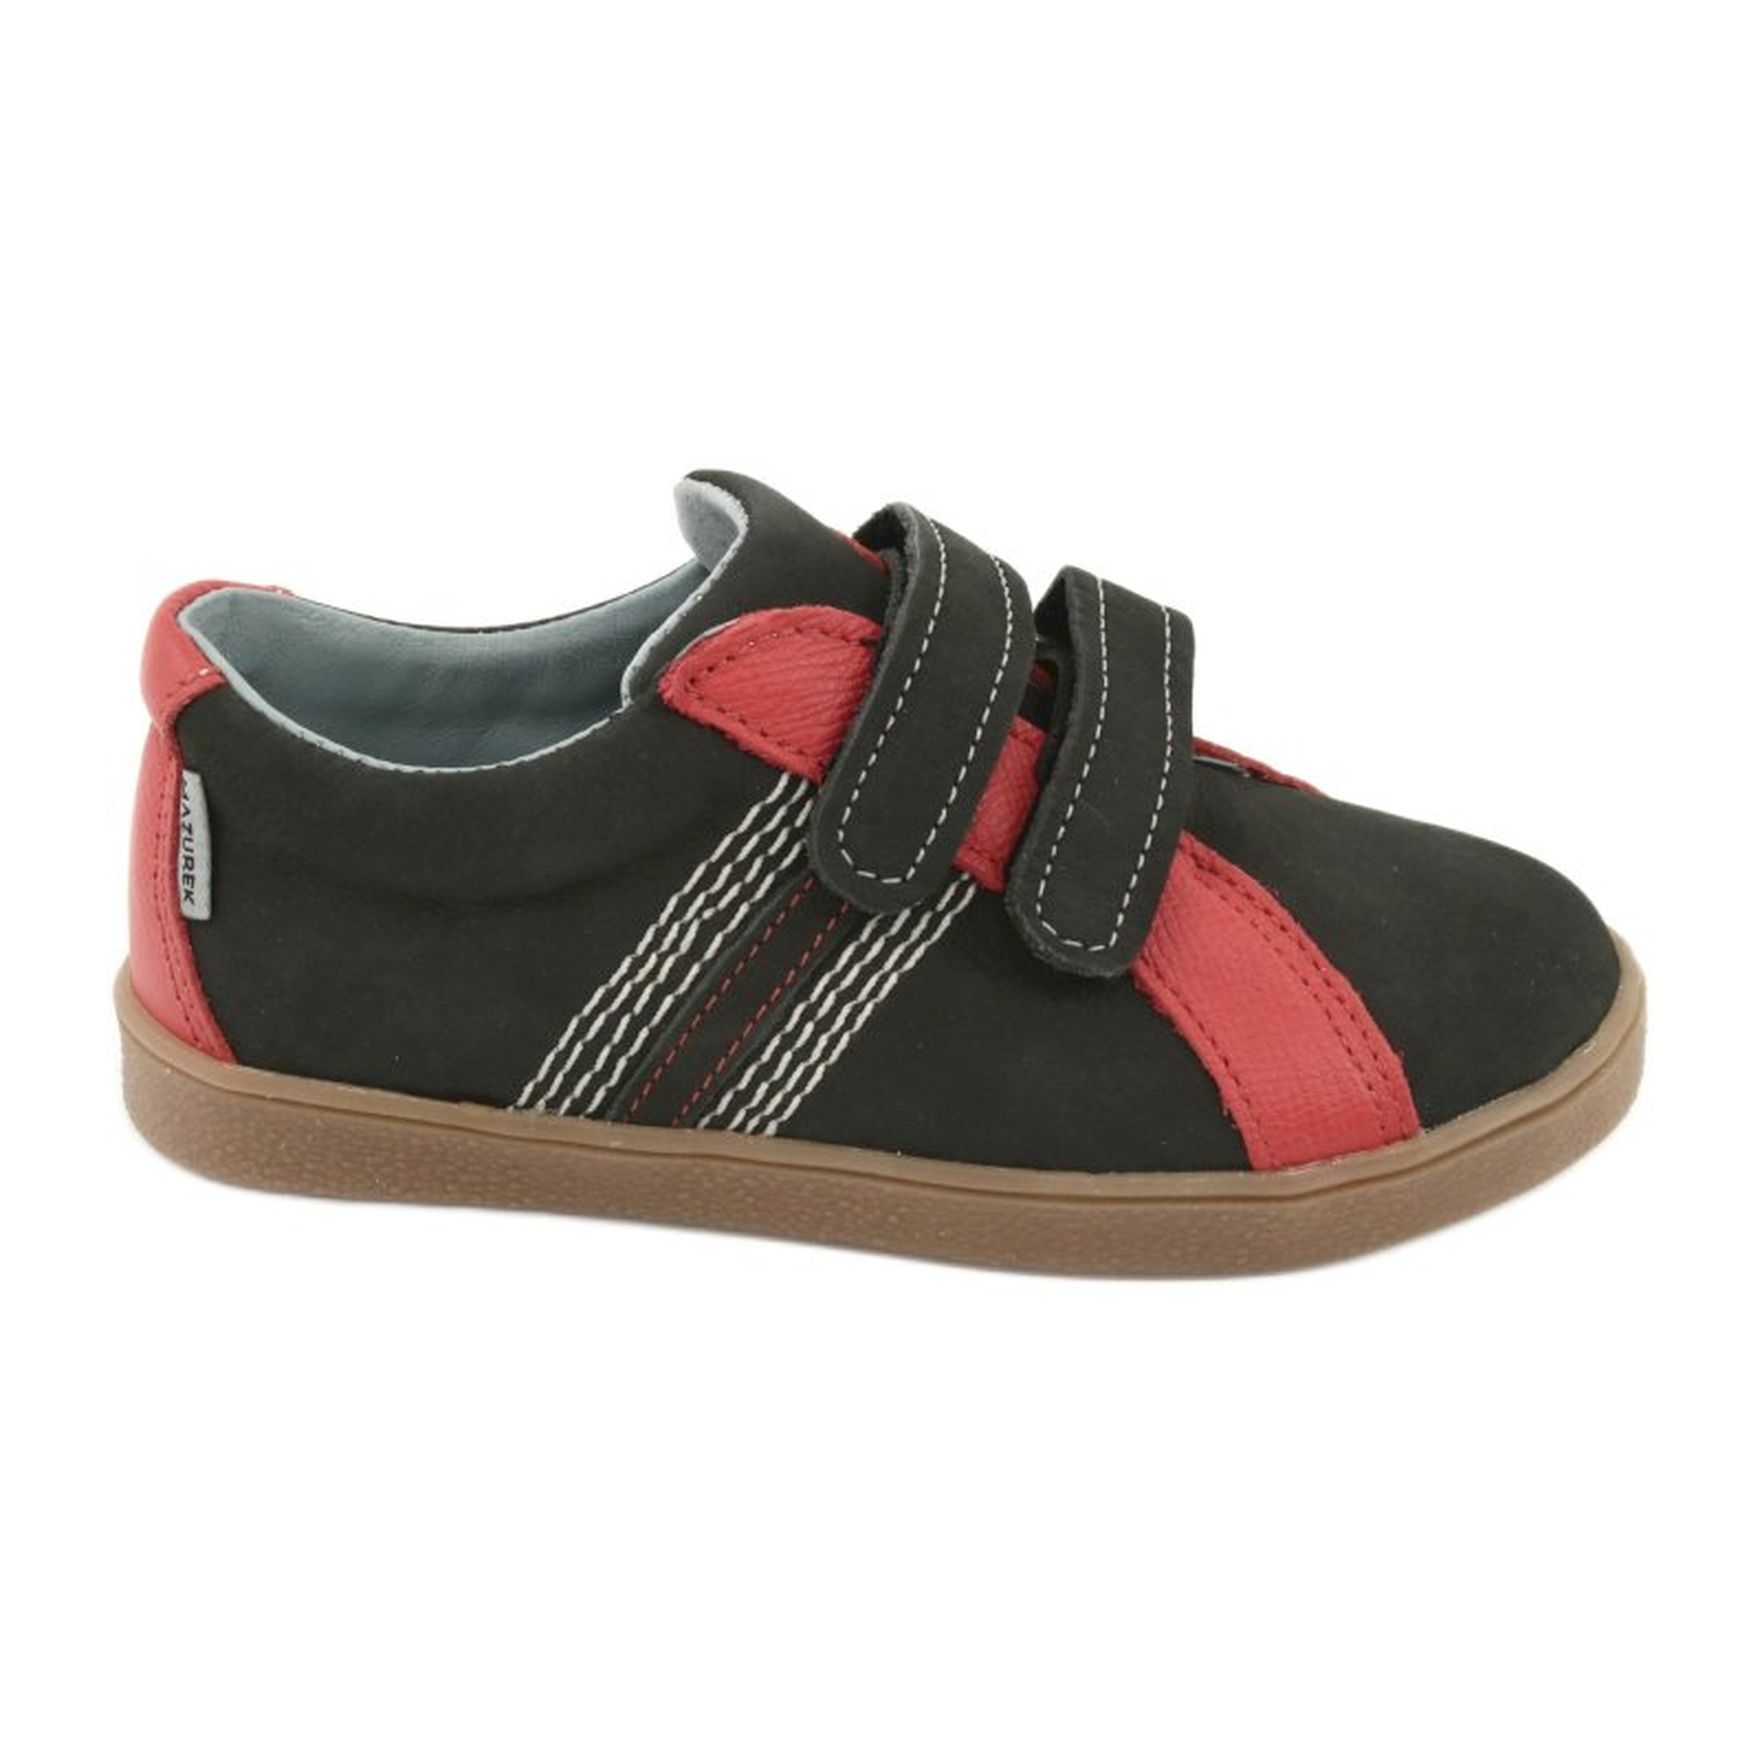 Buty chłopięce na rzepy Mazurek 1235 czarne czerwone